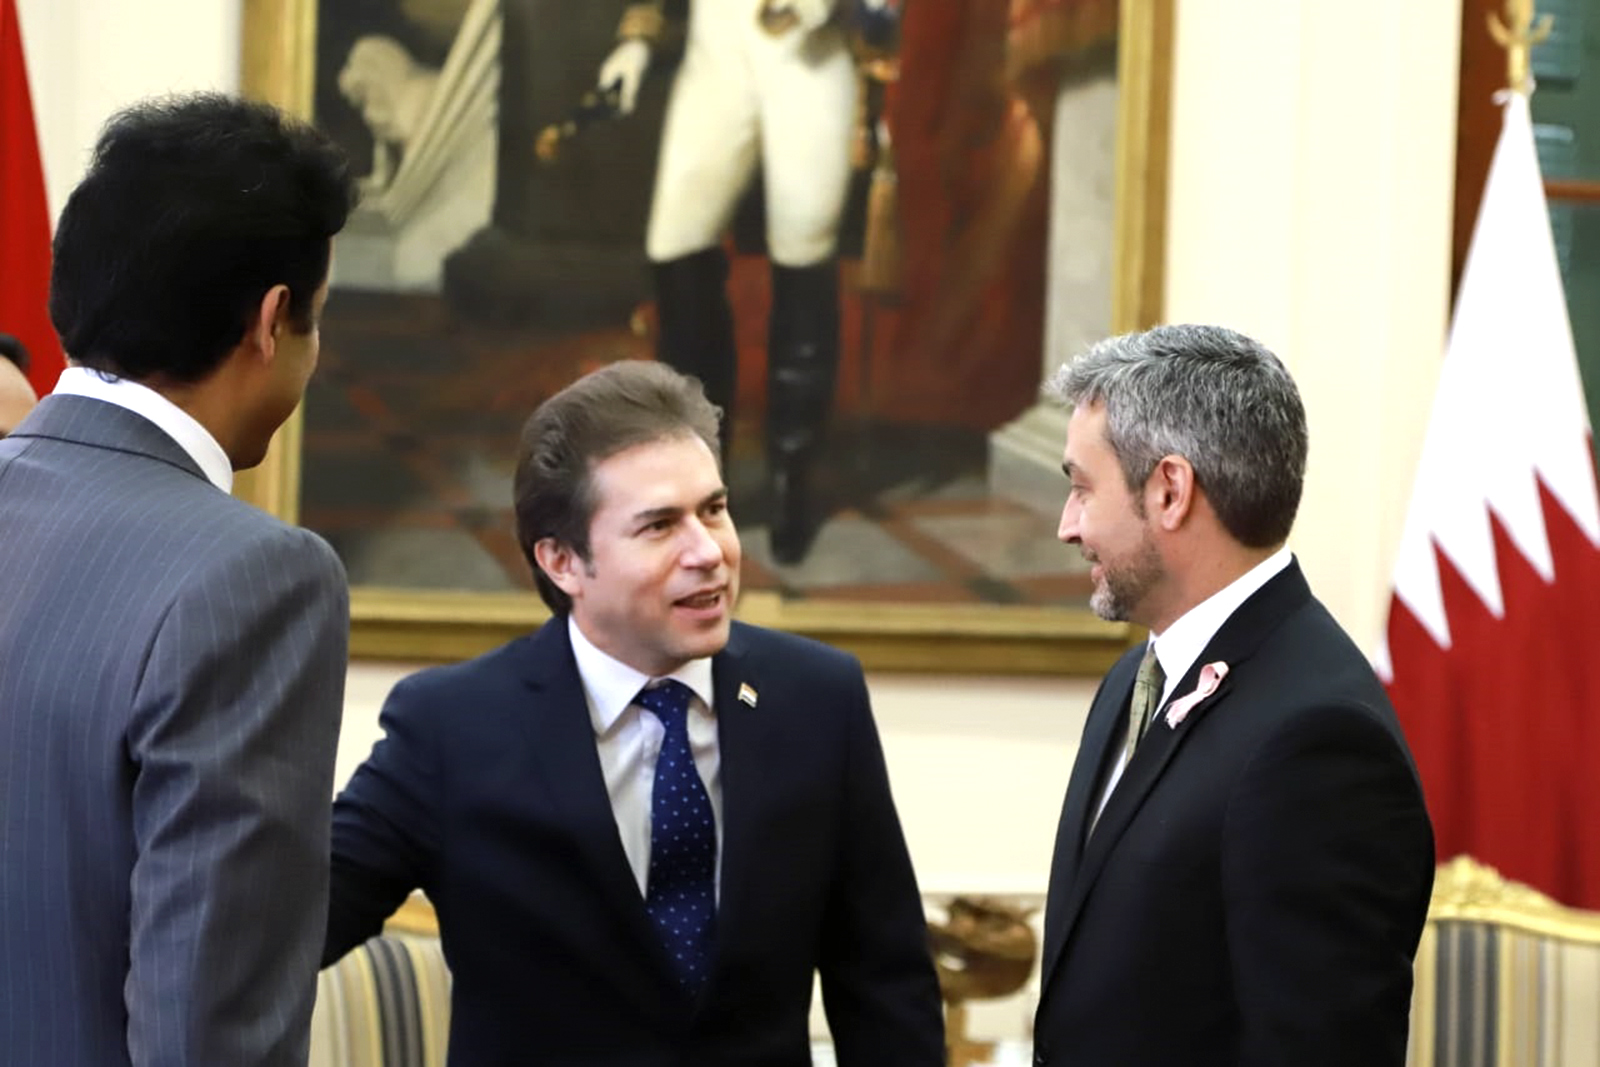 Los Presidentes del Paraguay y Qatar manifiestan voluntad de desarrollar la relación bilateral en todos los ámbitos